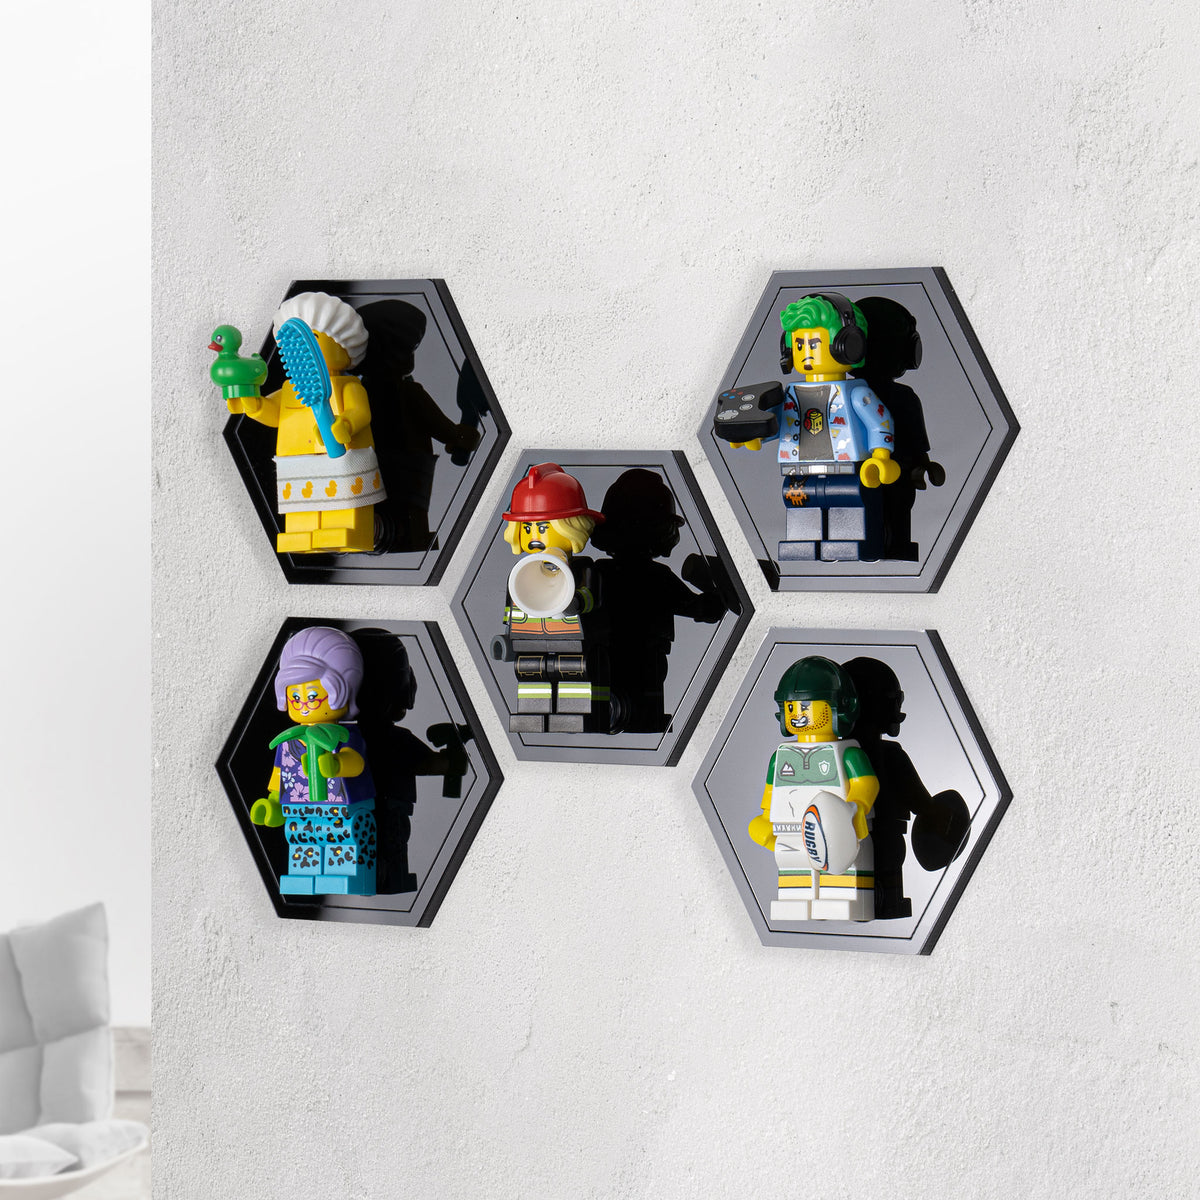 United Bricks, Printed LEGO Minifigures